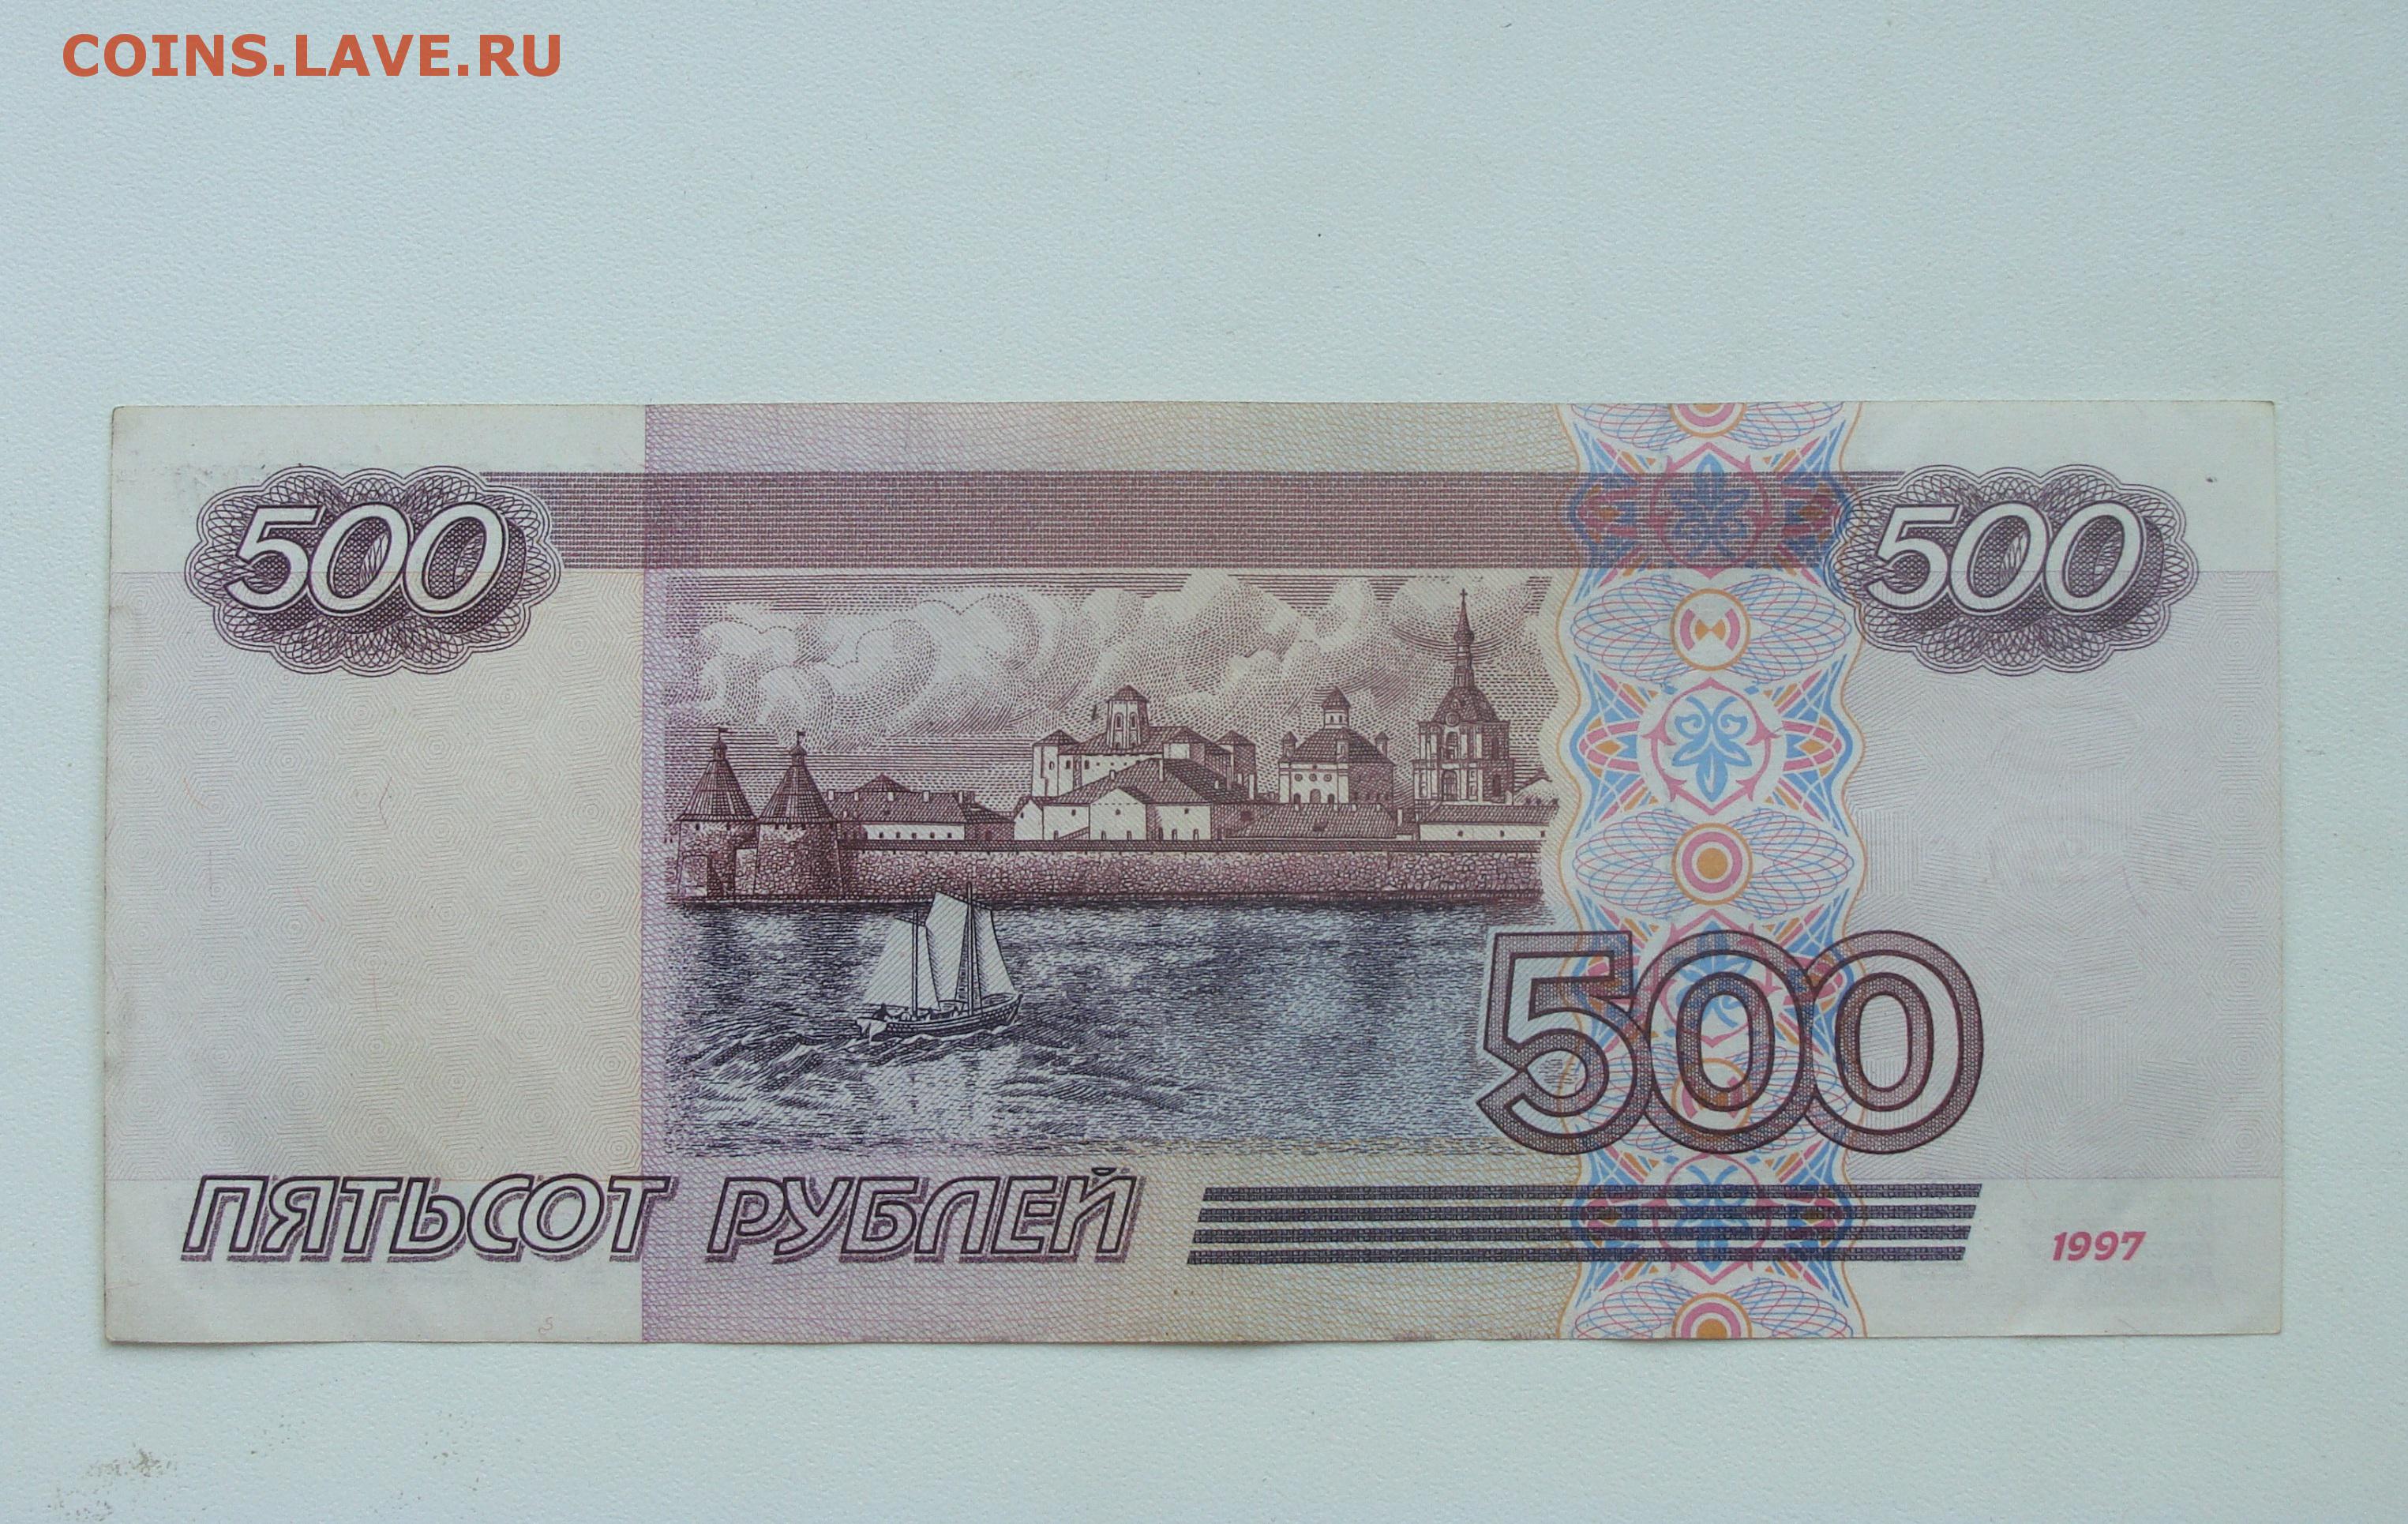 21 500 рублей. 500 Рублей. 500 Рублей 1997 г. модификация 2001 г. 500 Модификация 2001. 500 Рублей 1997 г. модификация 2001 г. до 06.03.